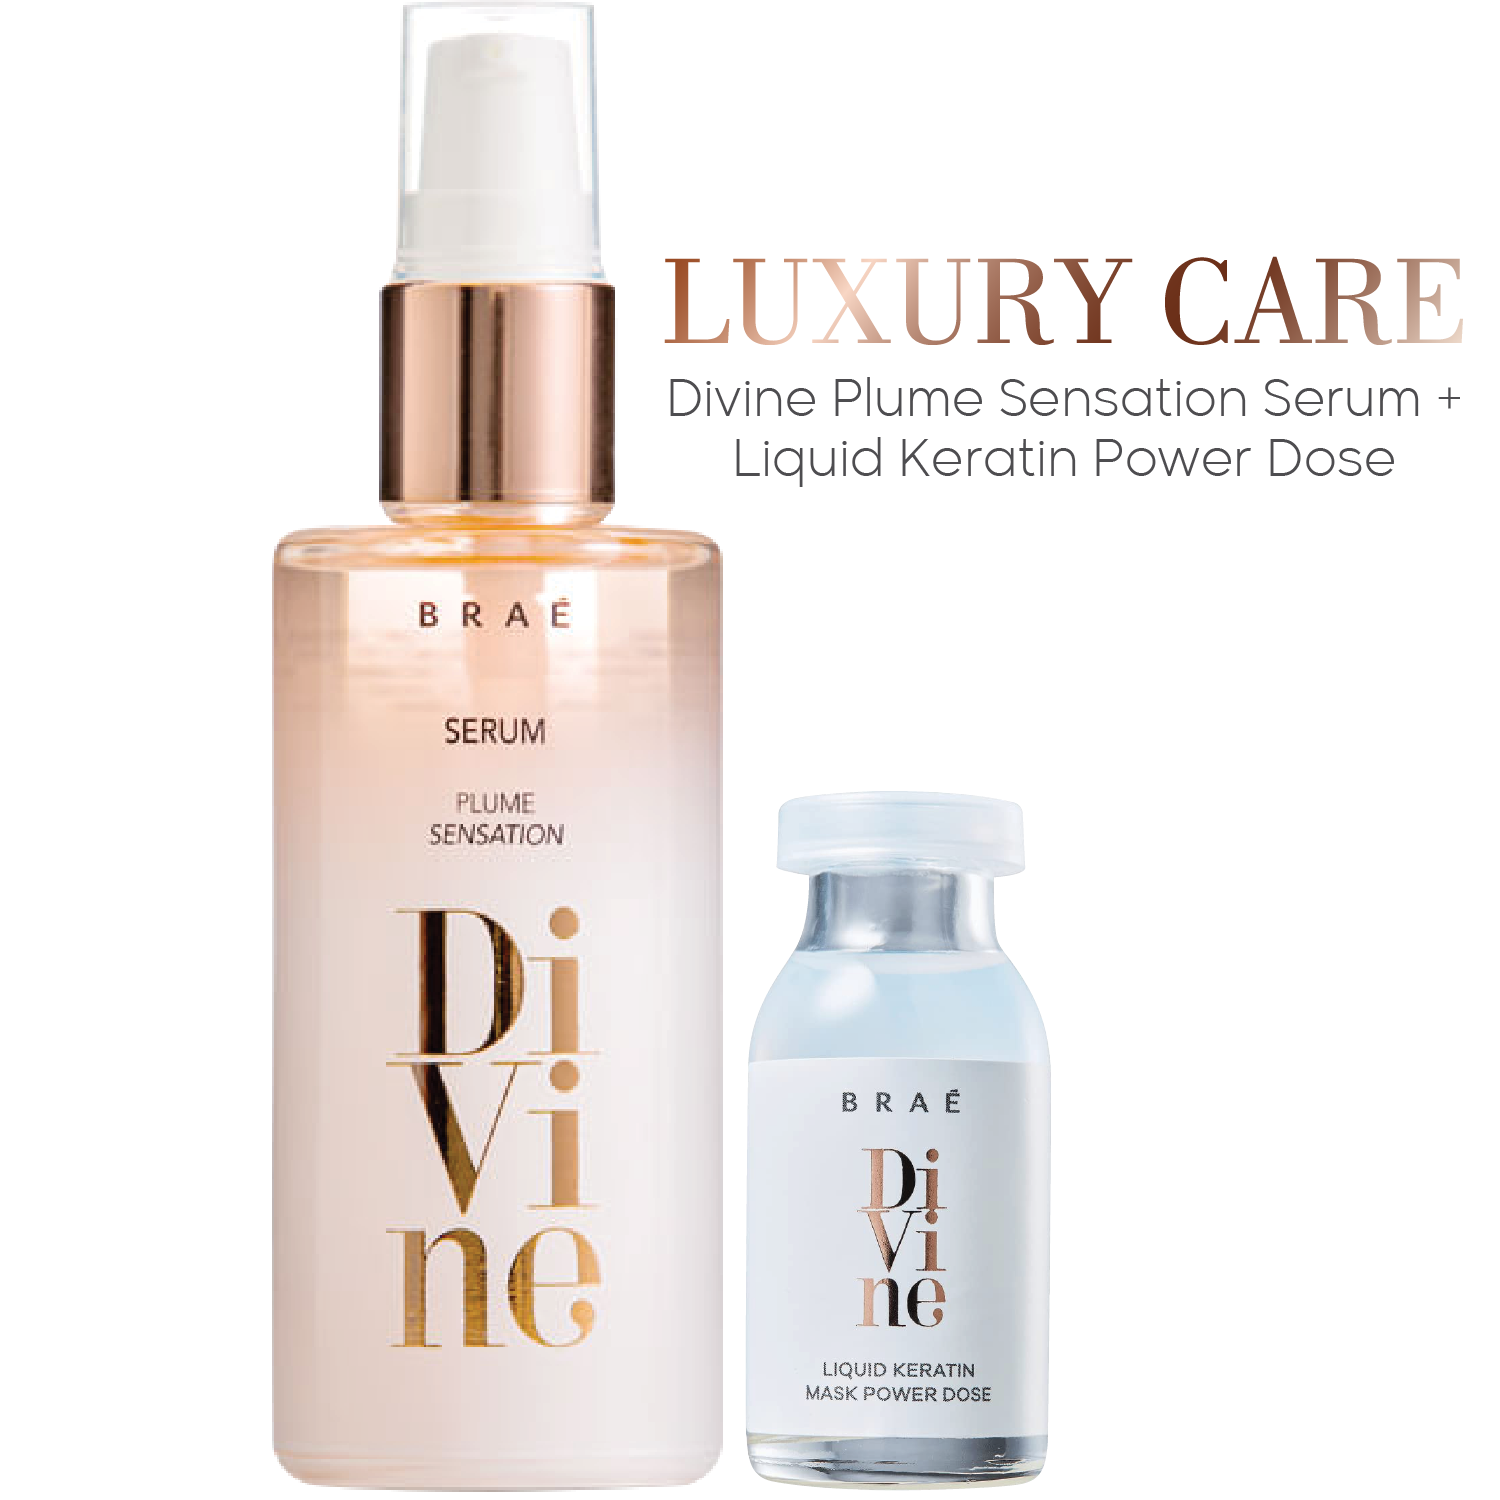 Luxury Care: Divine Plume Sensation Serum + Liquid Keratin Power Dose